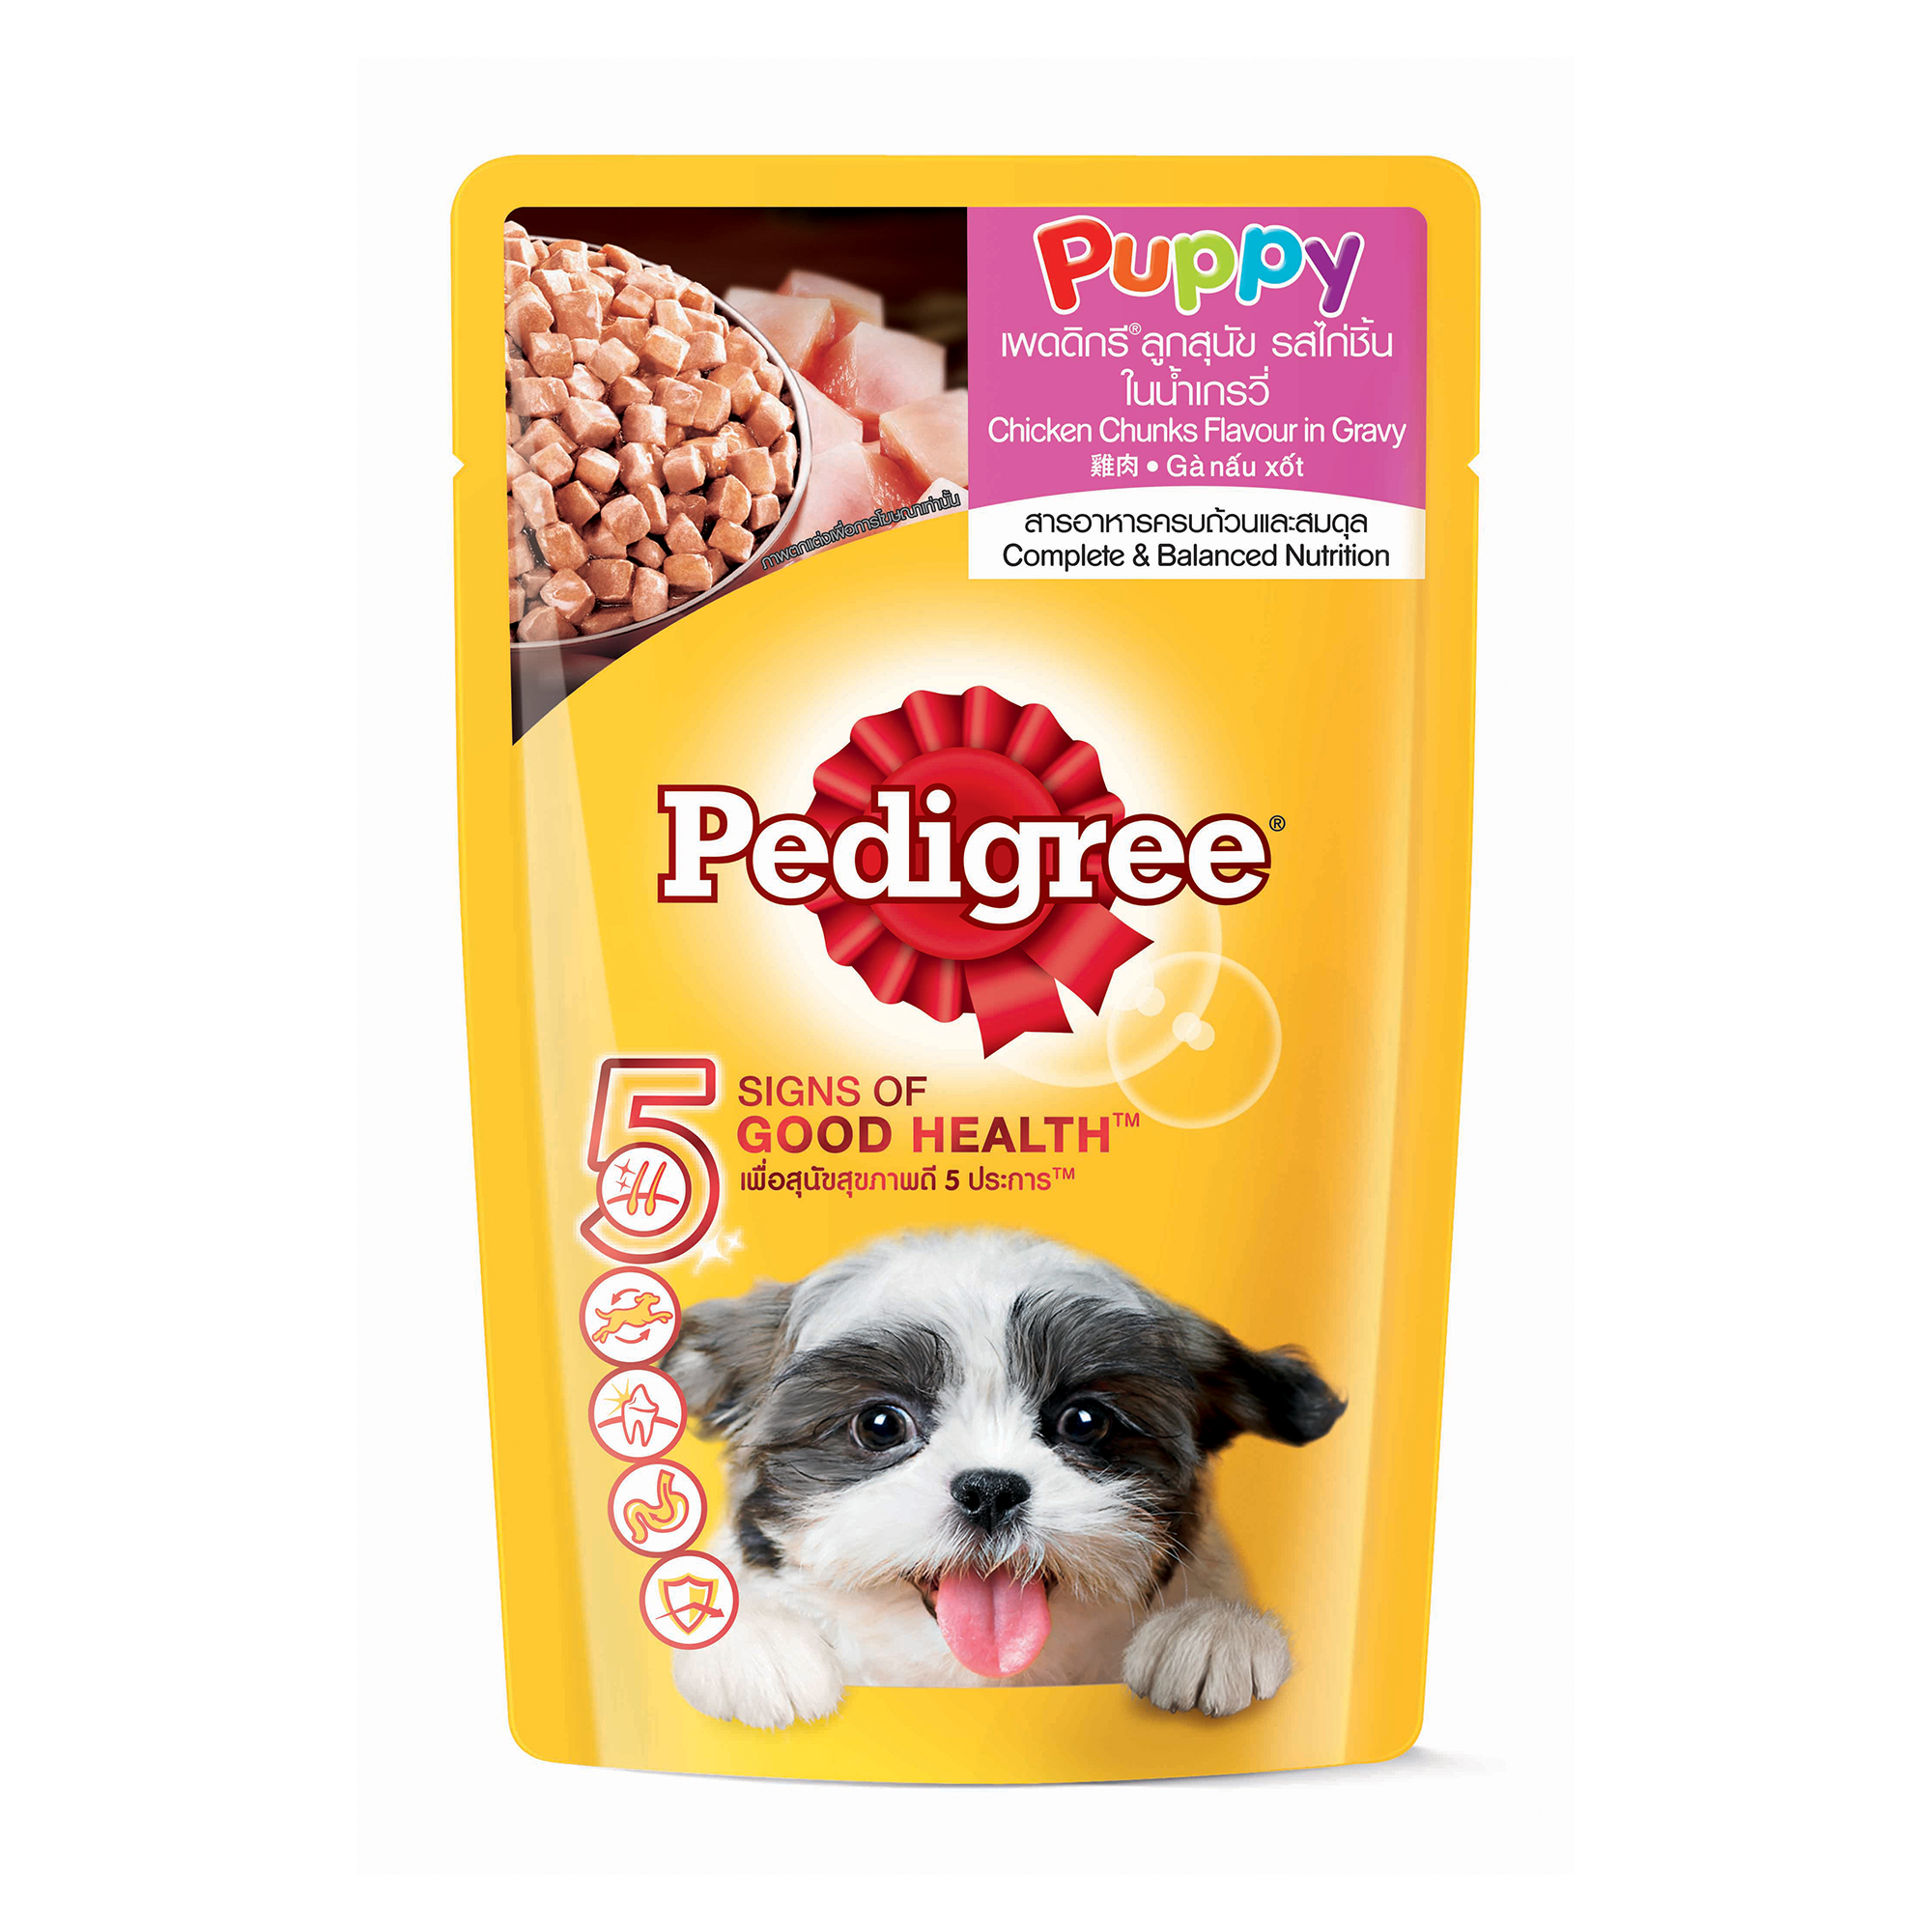 pedigree dog food